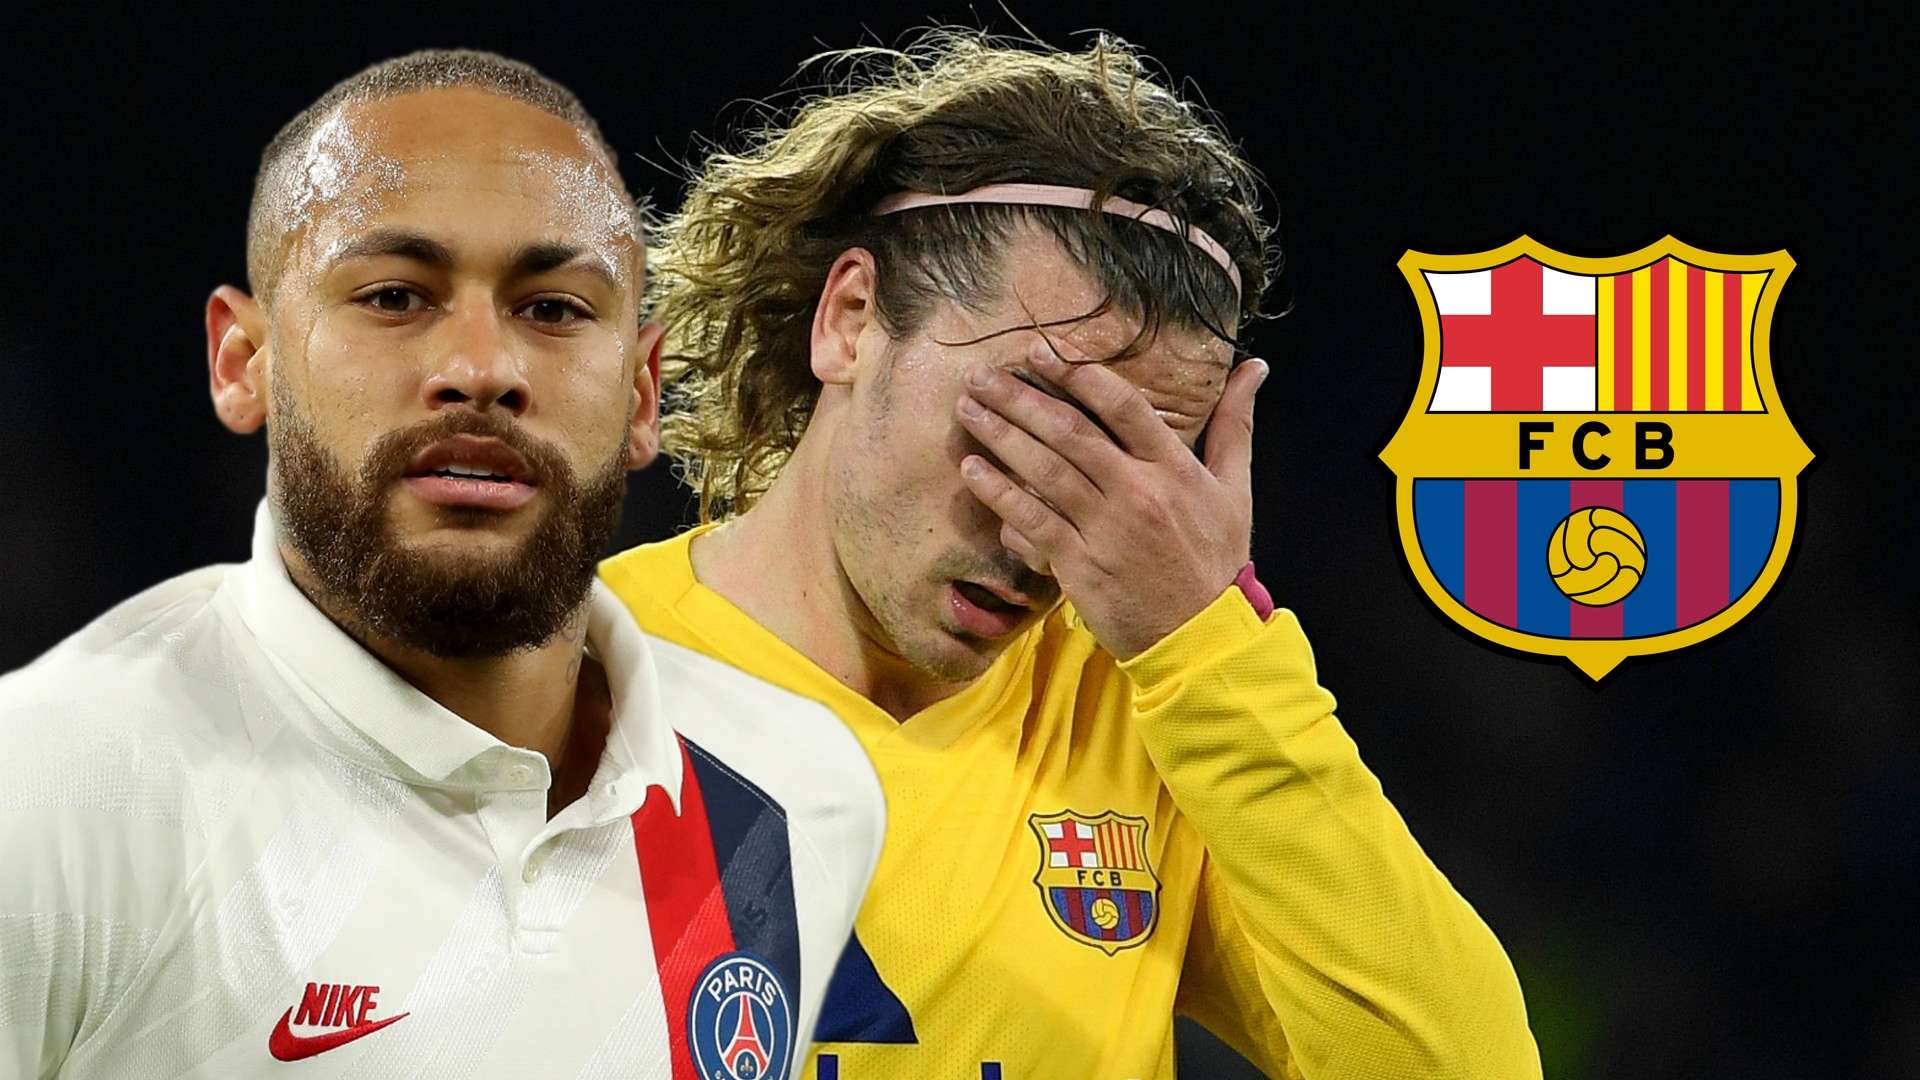 Neymar/Antoine Griezmann Barcelona split